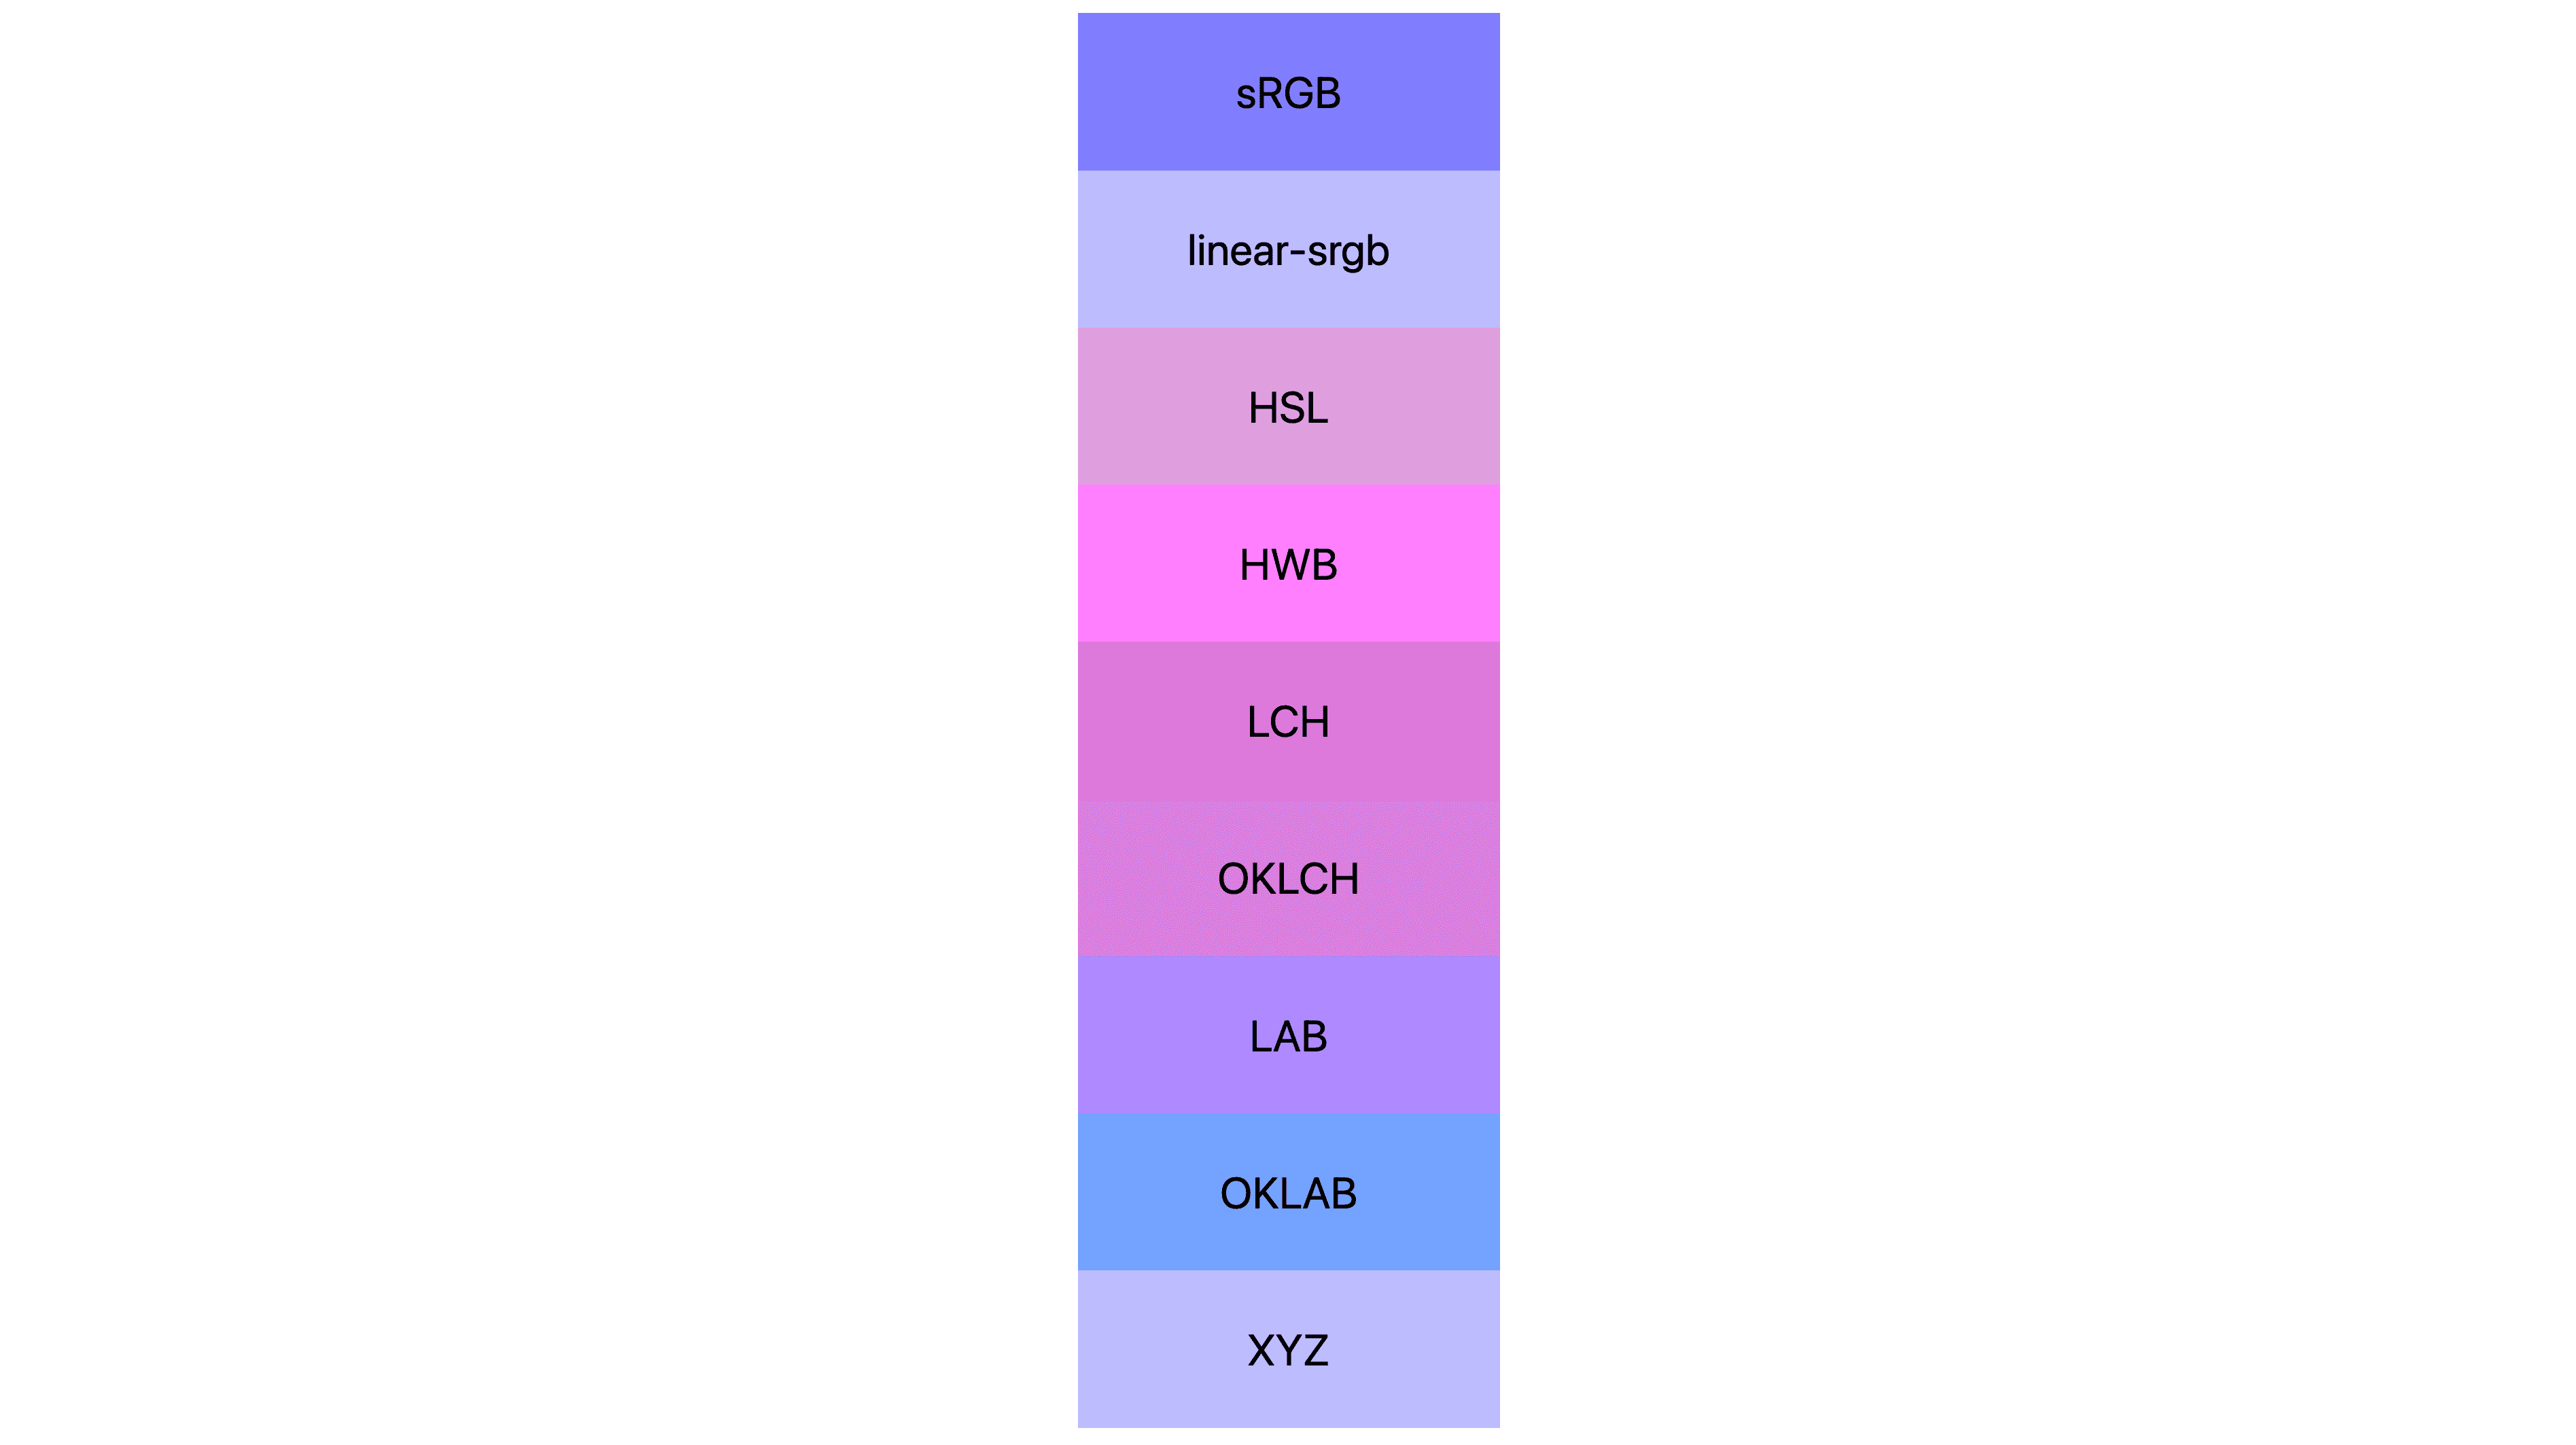 Sept espaces colorimétriques (srgb, linear-srgb, lch, oklch, lab, oklab, xyz) et en afficher chacun un résultat différent. Beaucoup sont roses ou violets, quelques-uns sont encore bleus.